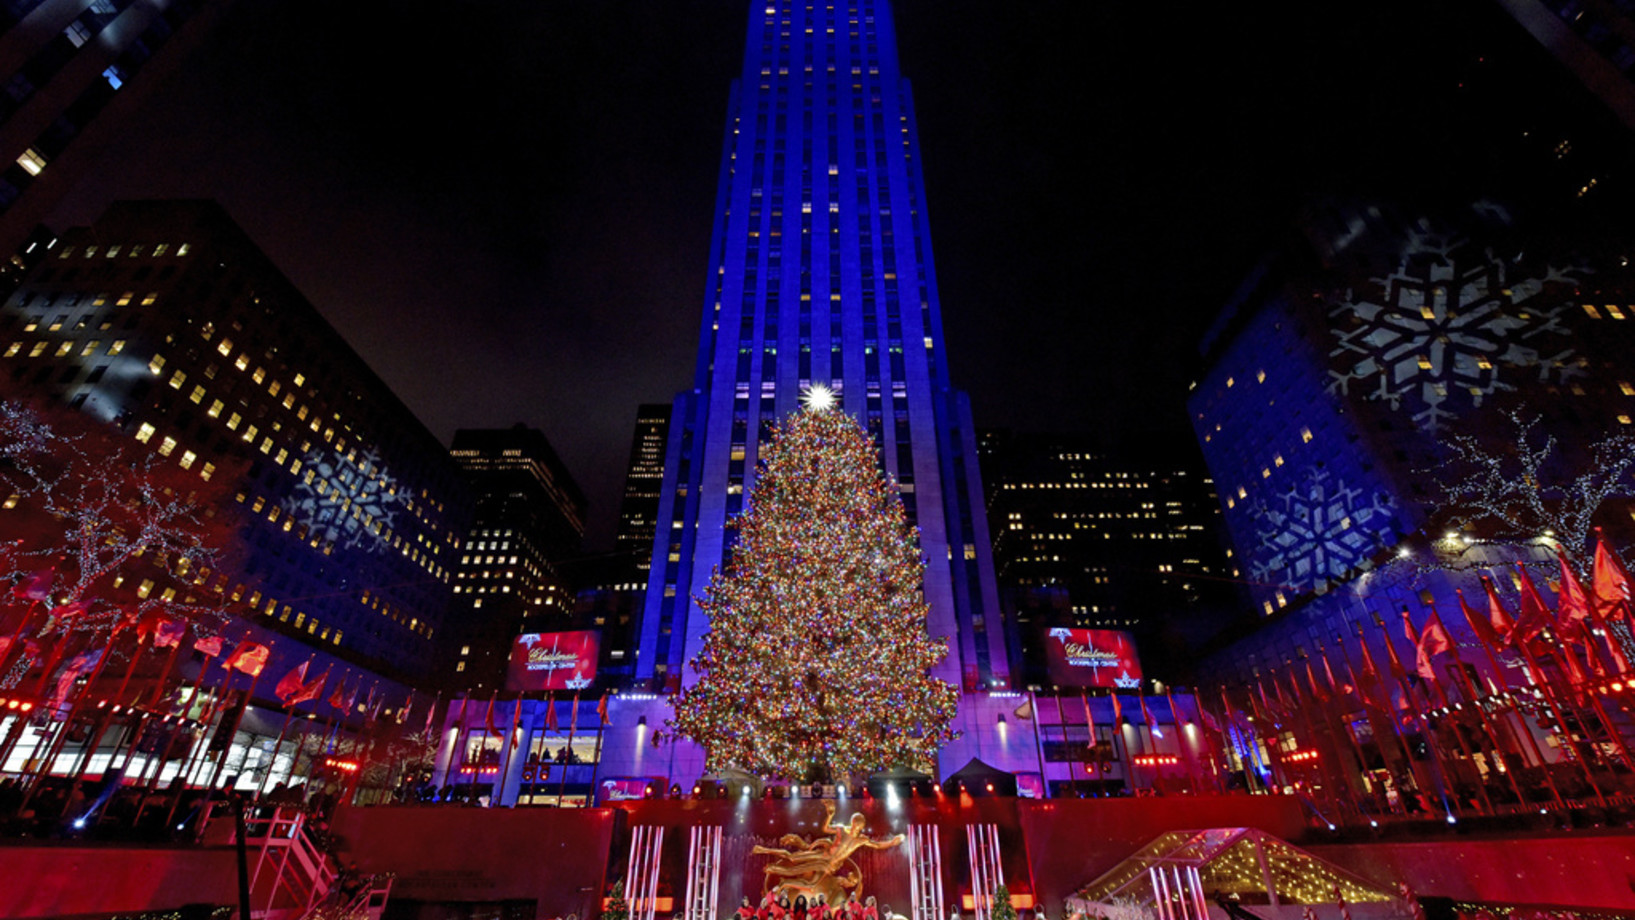 Am 4. Dezember wurde beim Rockefeller Center in New York mit grosser Show die aus über 50'000 farbigen LEDs bestehende Christbaumbeleuchtung entzündet. Seit 1933 wird dort jeweils im Advent ein mächtiger Weihnachtsbaum aufgestellt. In diesem Jahr ist es eine aus Florida stammende 23 Meter hohe norwegische Fichte, die von einem Swarowski-Stern gekrönt ist. (Keystone, Diane Bondareff/AP Images for Tishman Speyer)